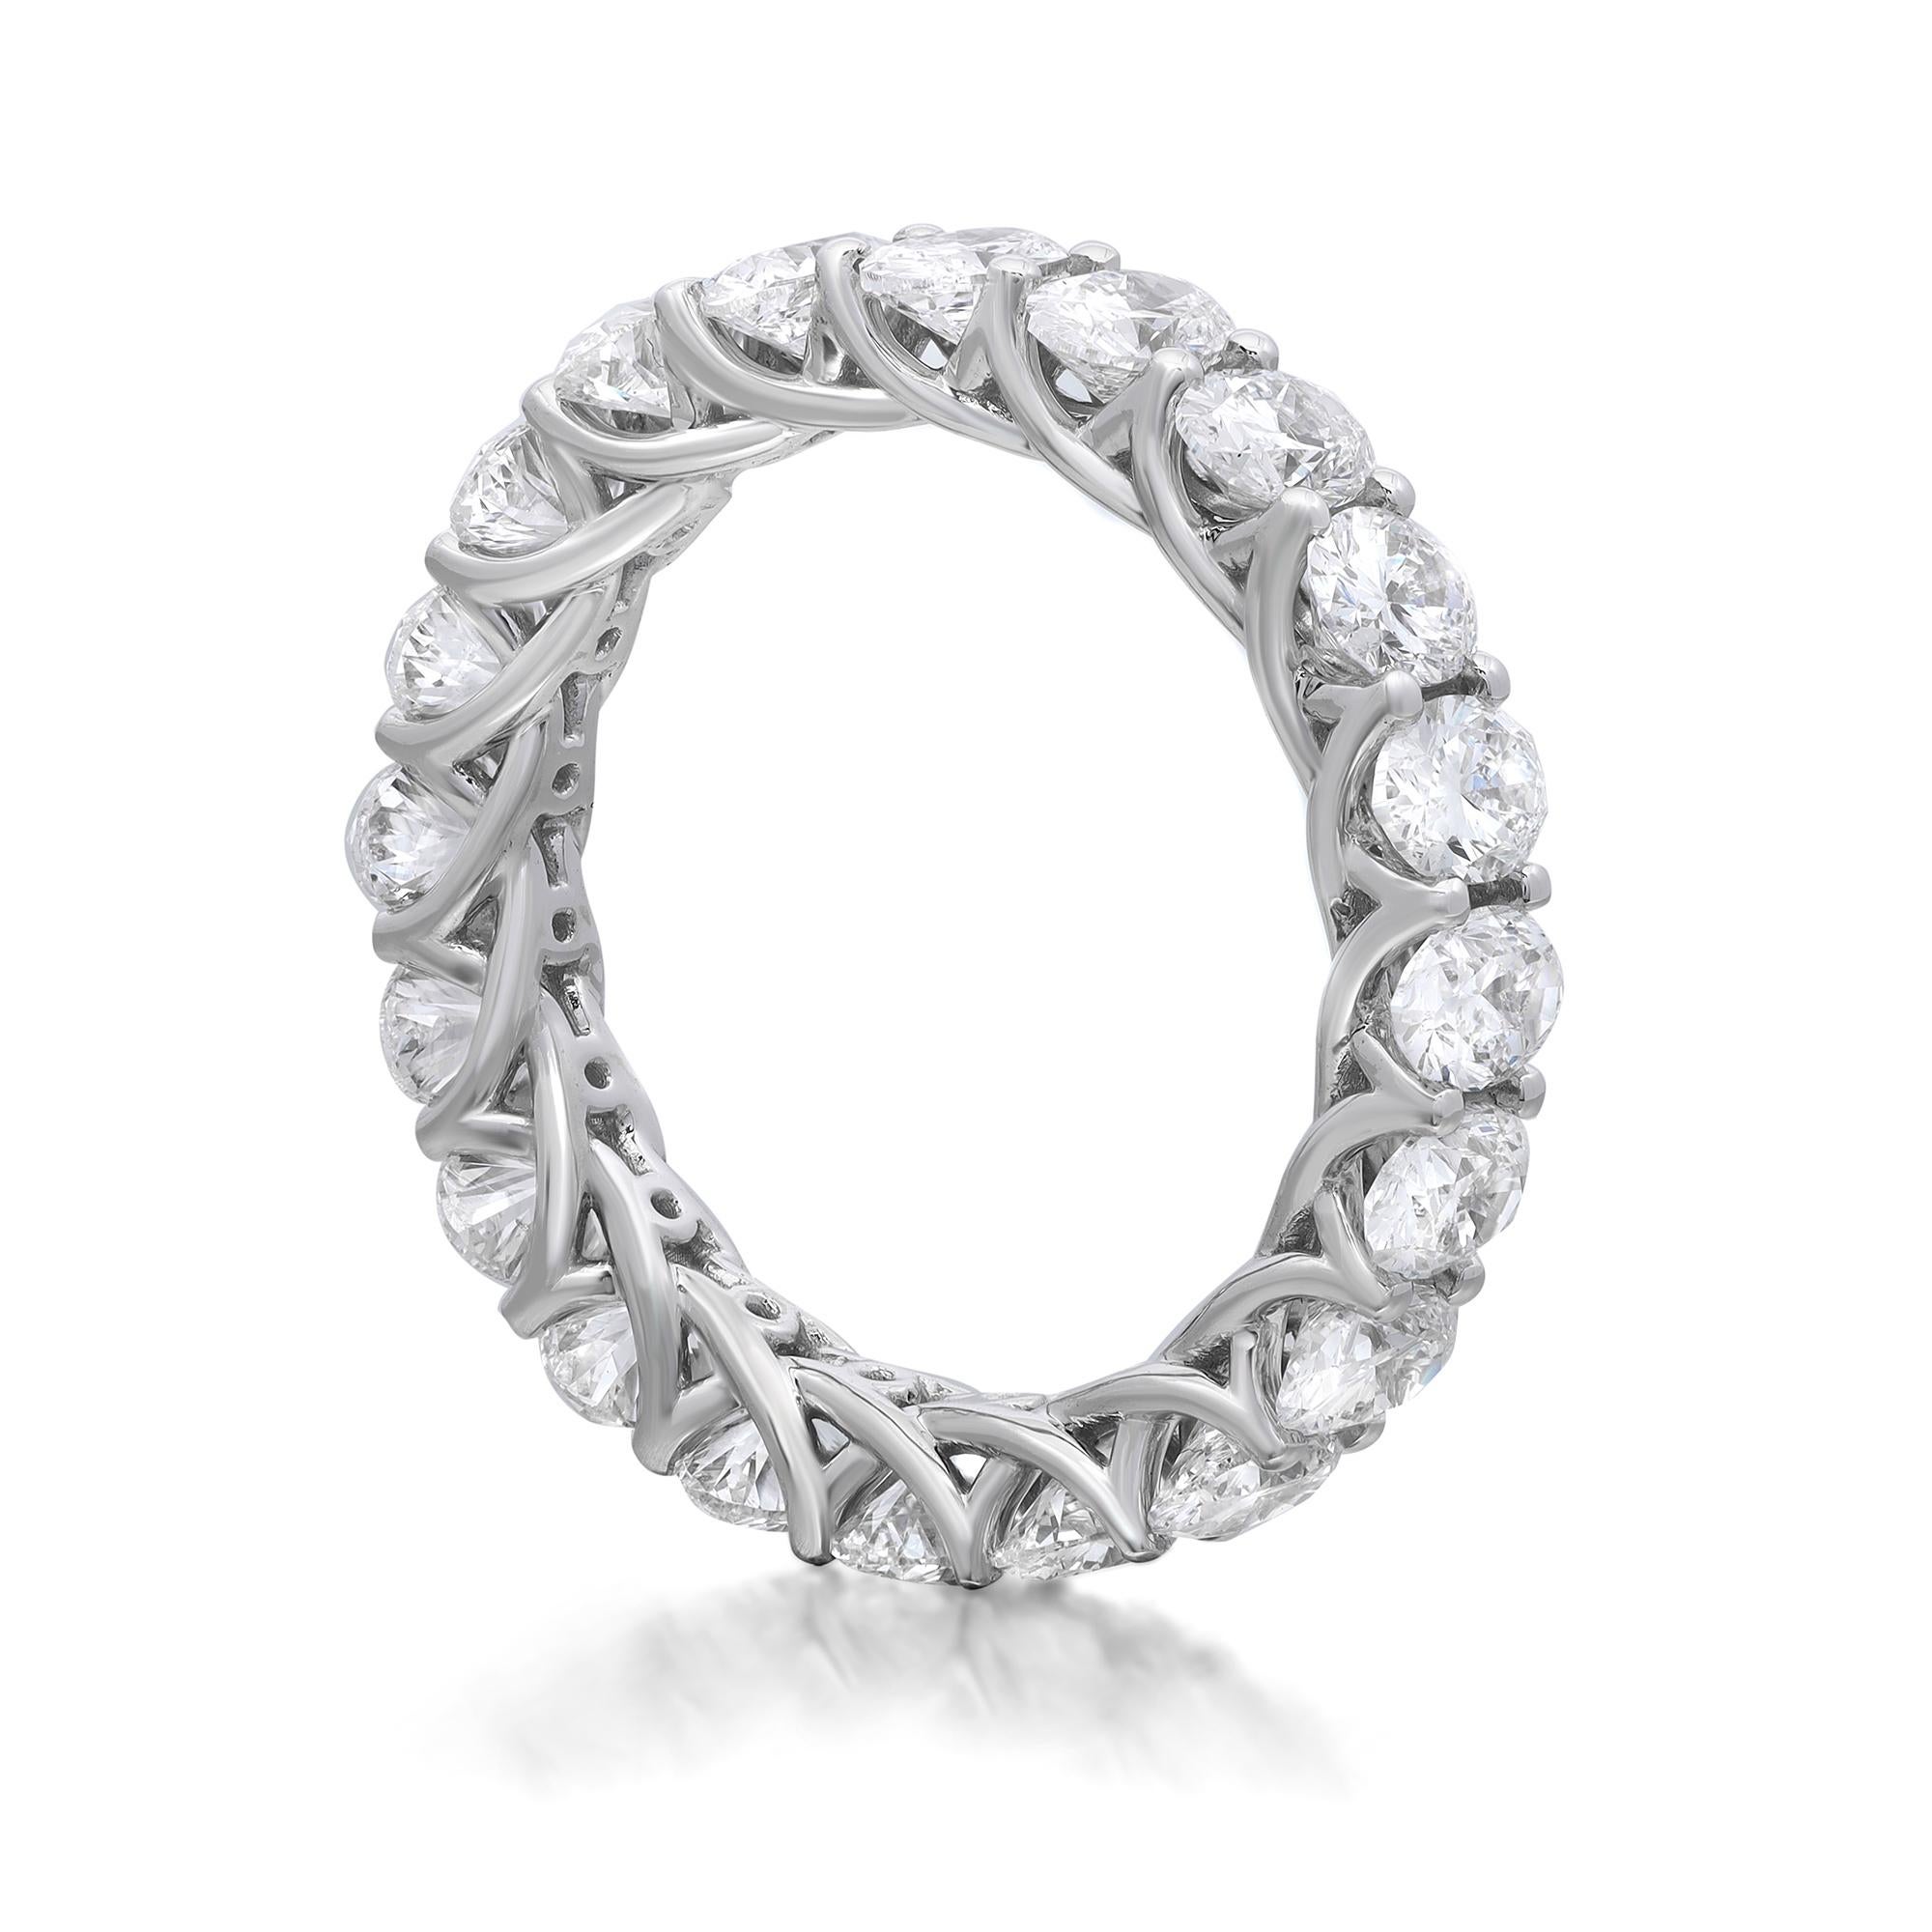 Dieser Diamantring für die Ewigkeit ist ein wunderschönes Beispiel für einen klassischen Stil. Er ist mit 20 oval geschliffenen, funkelnden Diamanten in Zackenfassung besetzt. Gefertigt aus feinem 18-karätigem Weißgold. Gesamtgewicht der Diamanten: